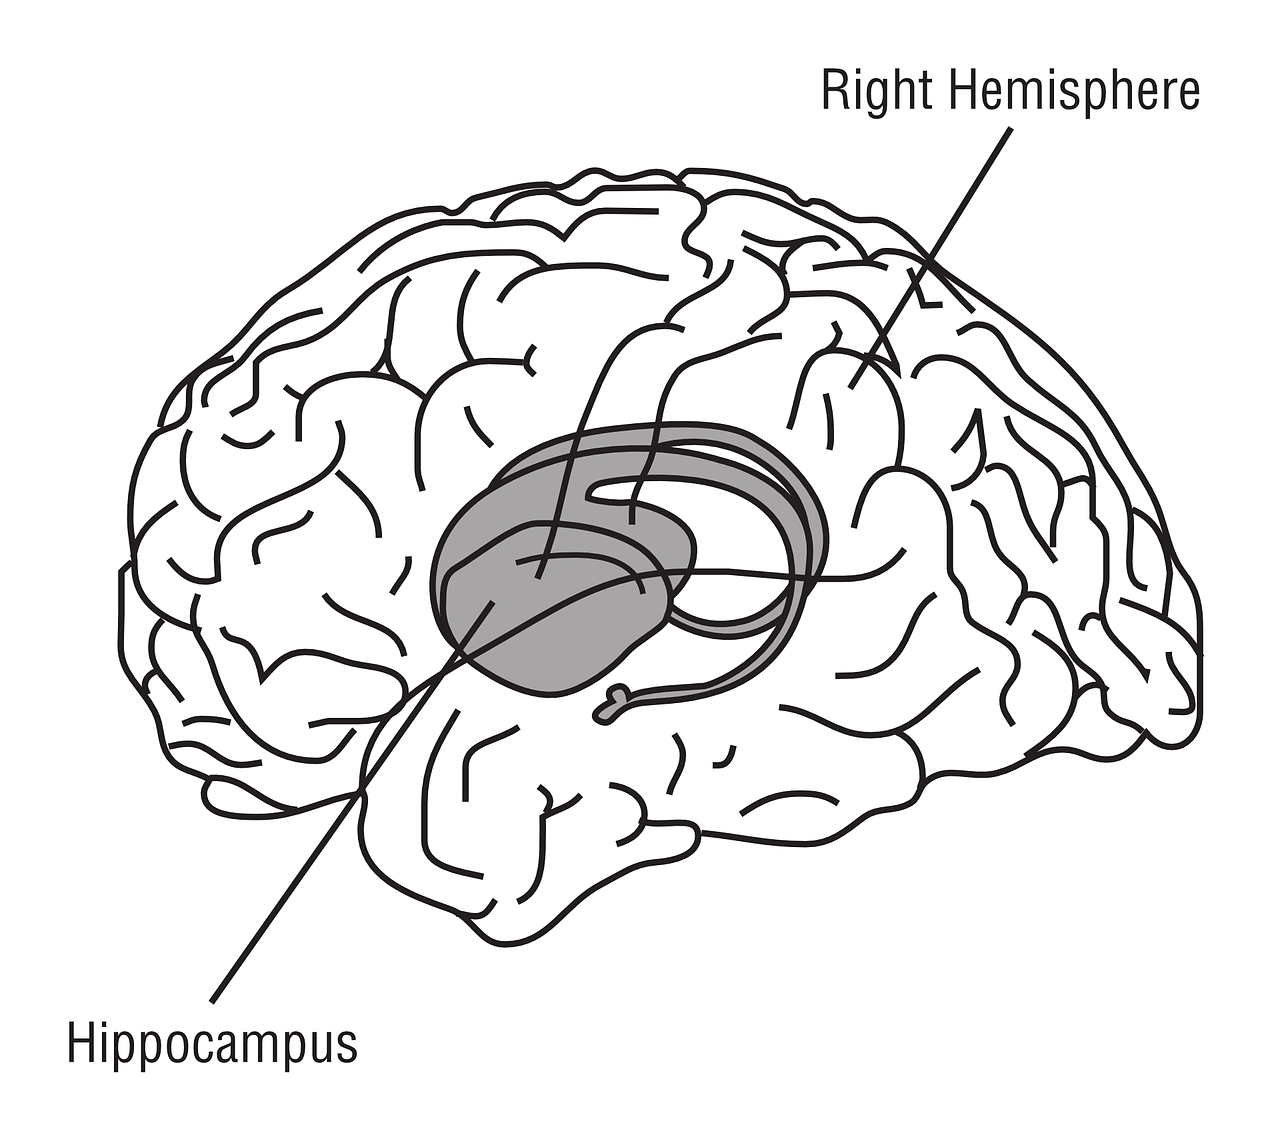 amygdala hippocampus prefrontal cortex